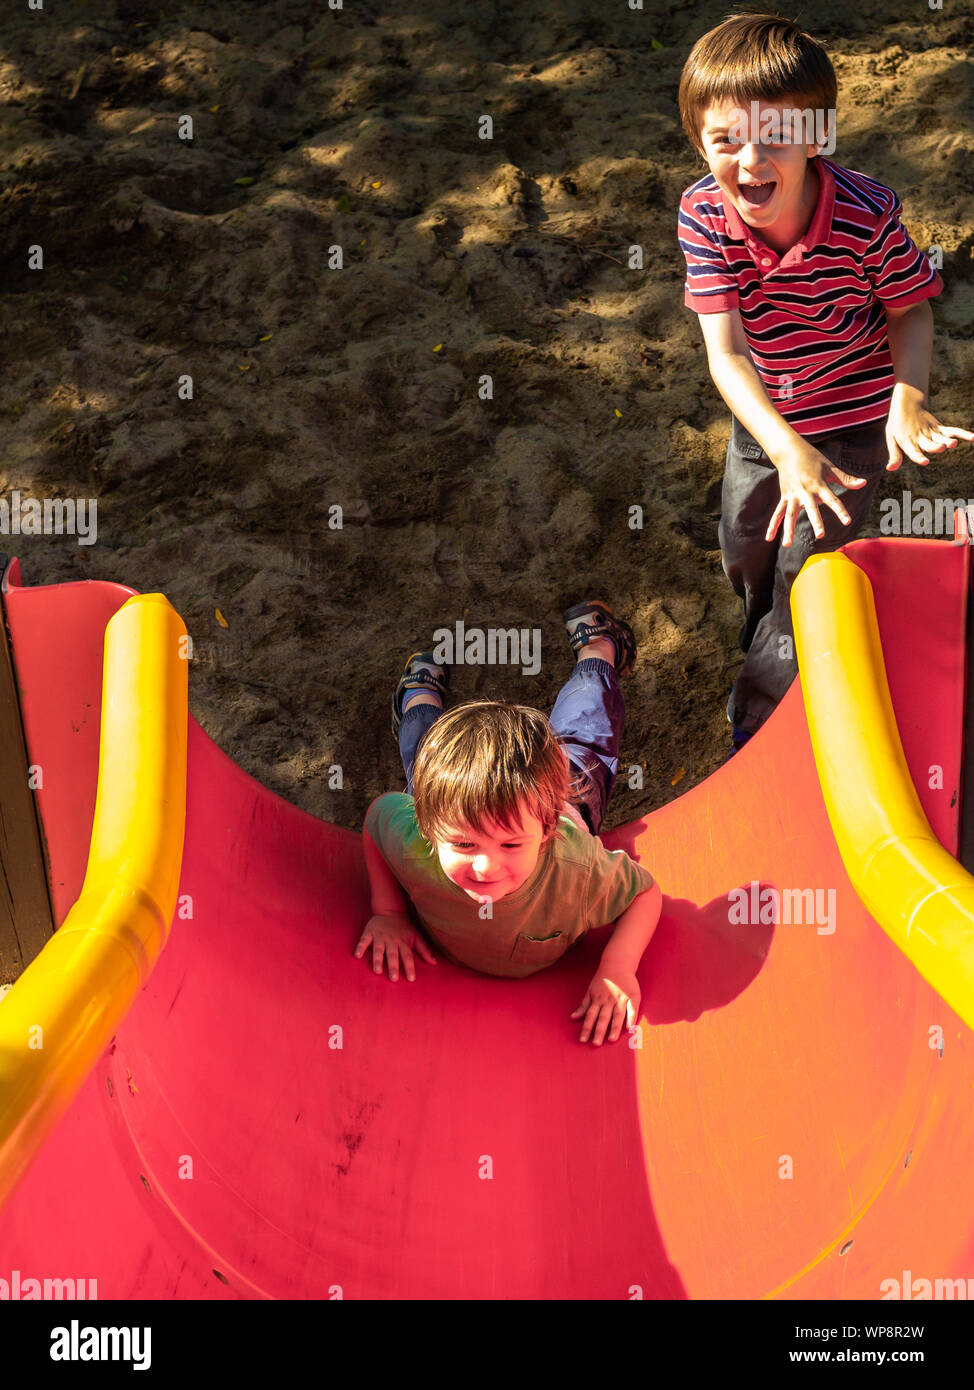 Ein Kleinkind Rutschen rückwärts hinunter eine Rutschbahn auf dem Bauch,  während seine älteren Kindergarten-alter Bruder lacht Stockfotografie -  Alamy